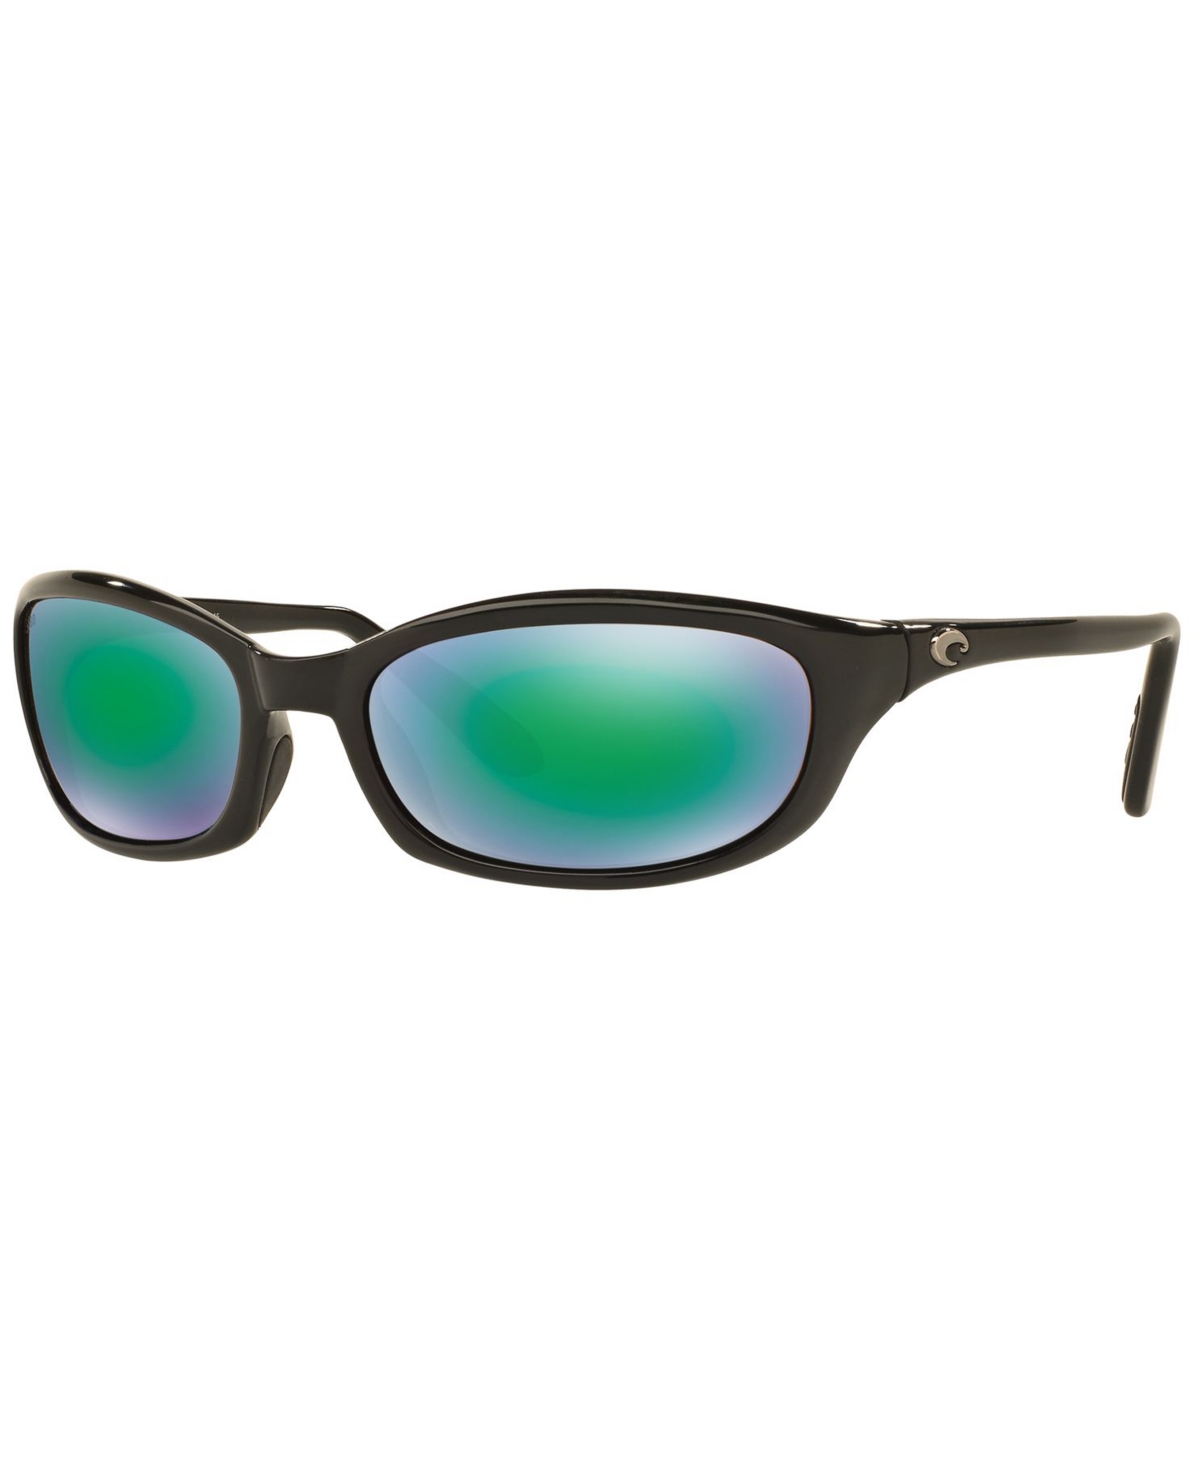 Costa Del Mar Polarized Sunglasses, Harpoon 06s000026 62p In Black Shiny,green Mirror Polar